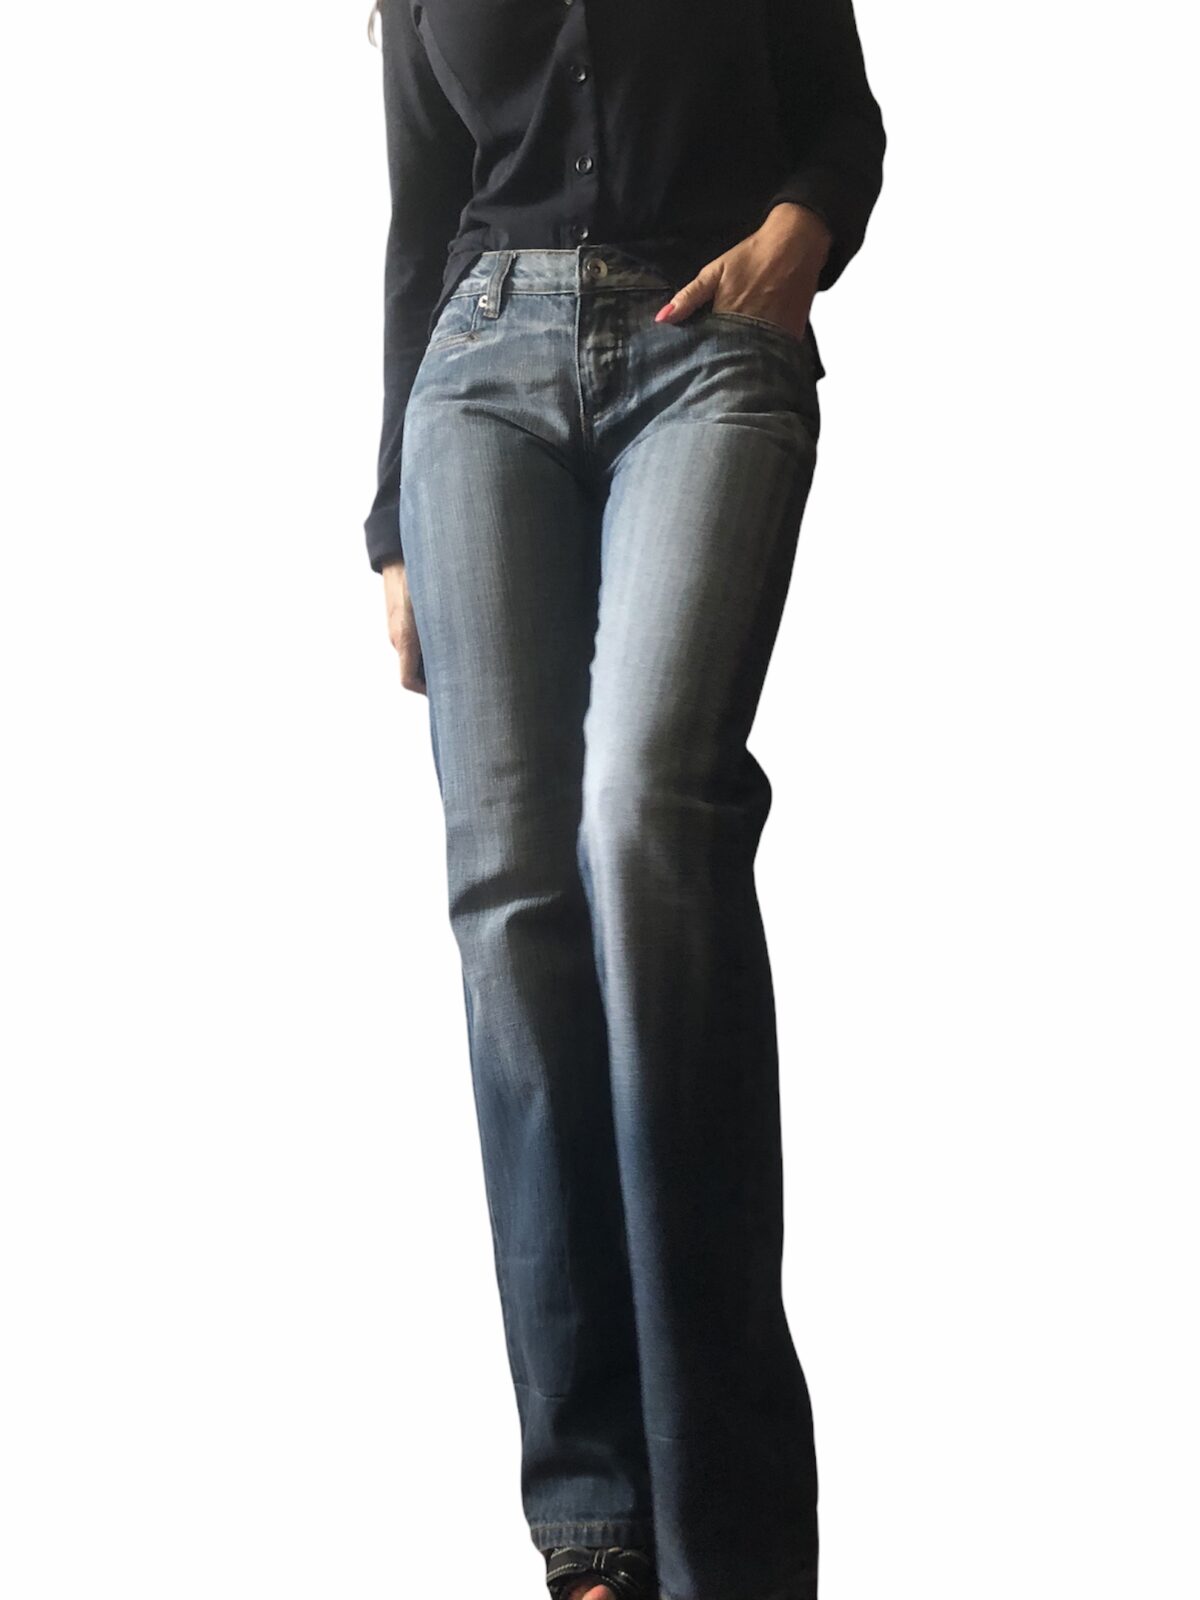 Dámské prodloužené jeans - XS/S